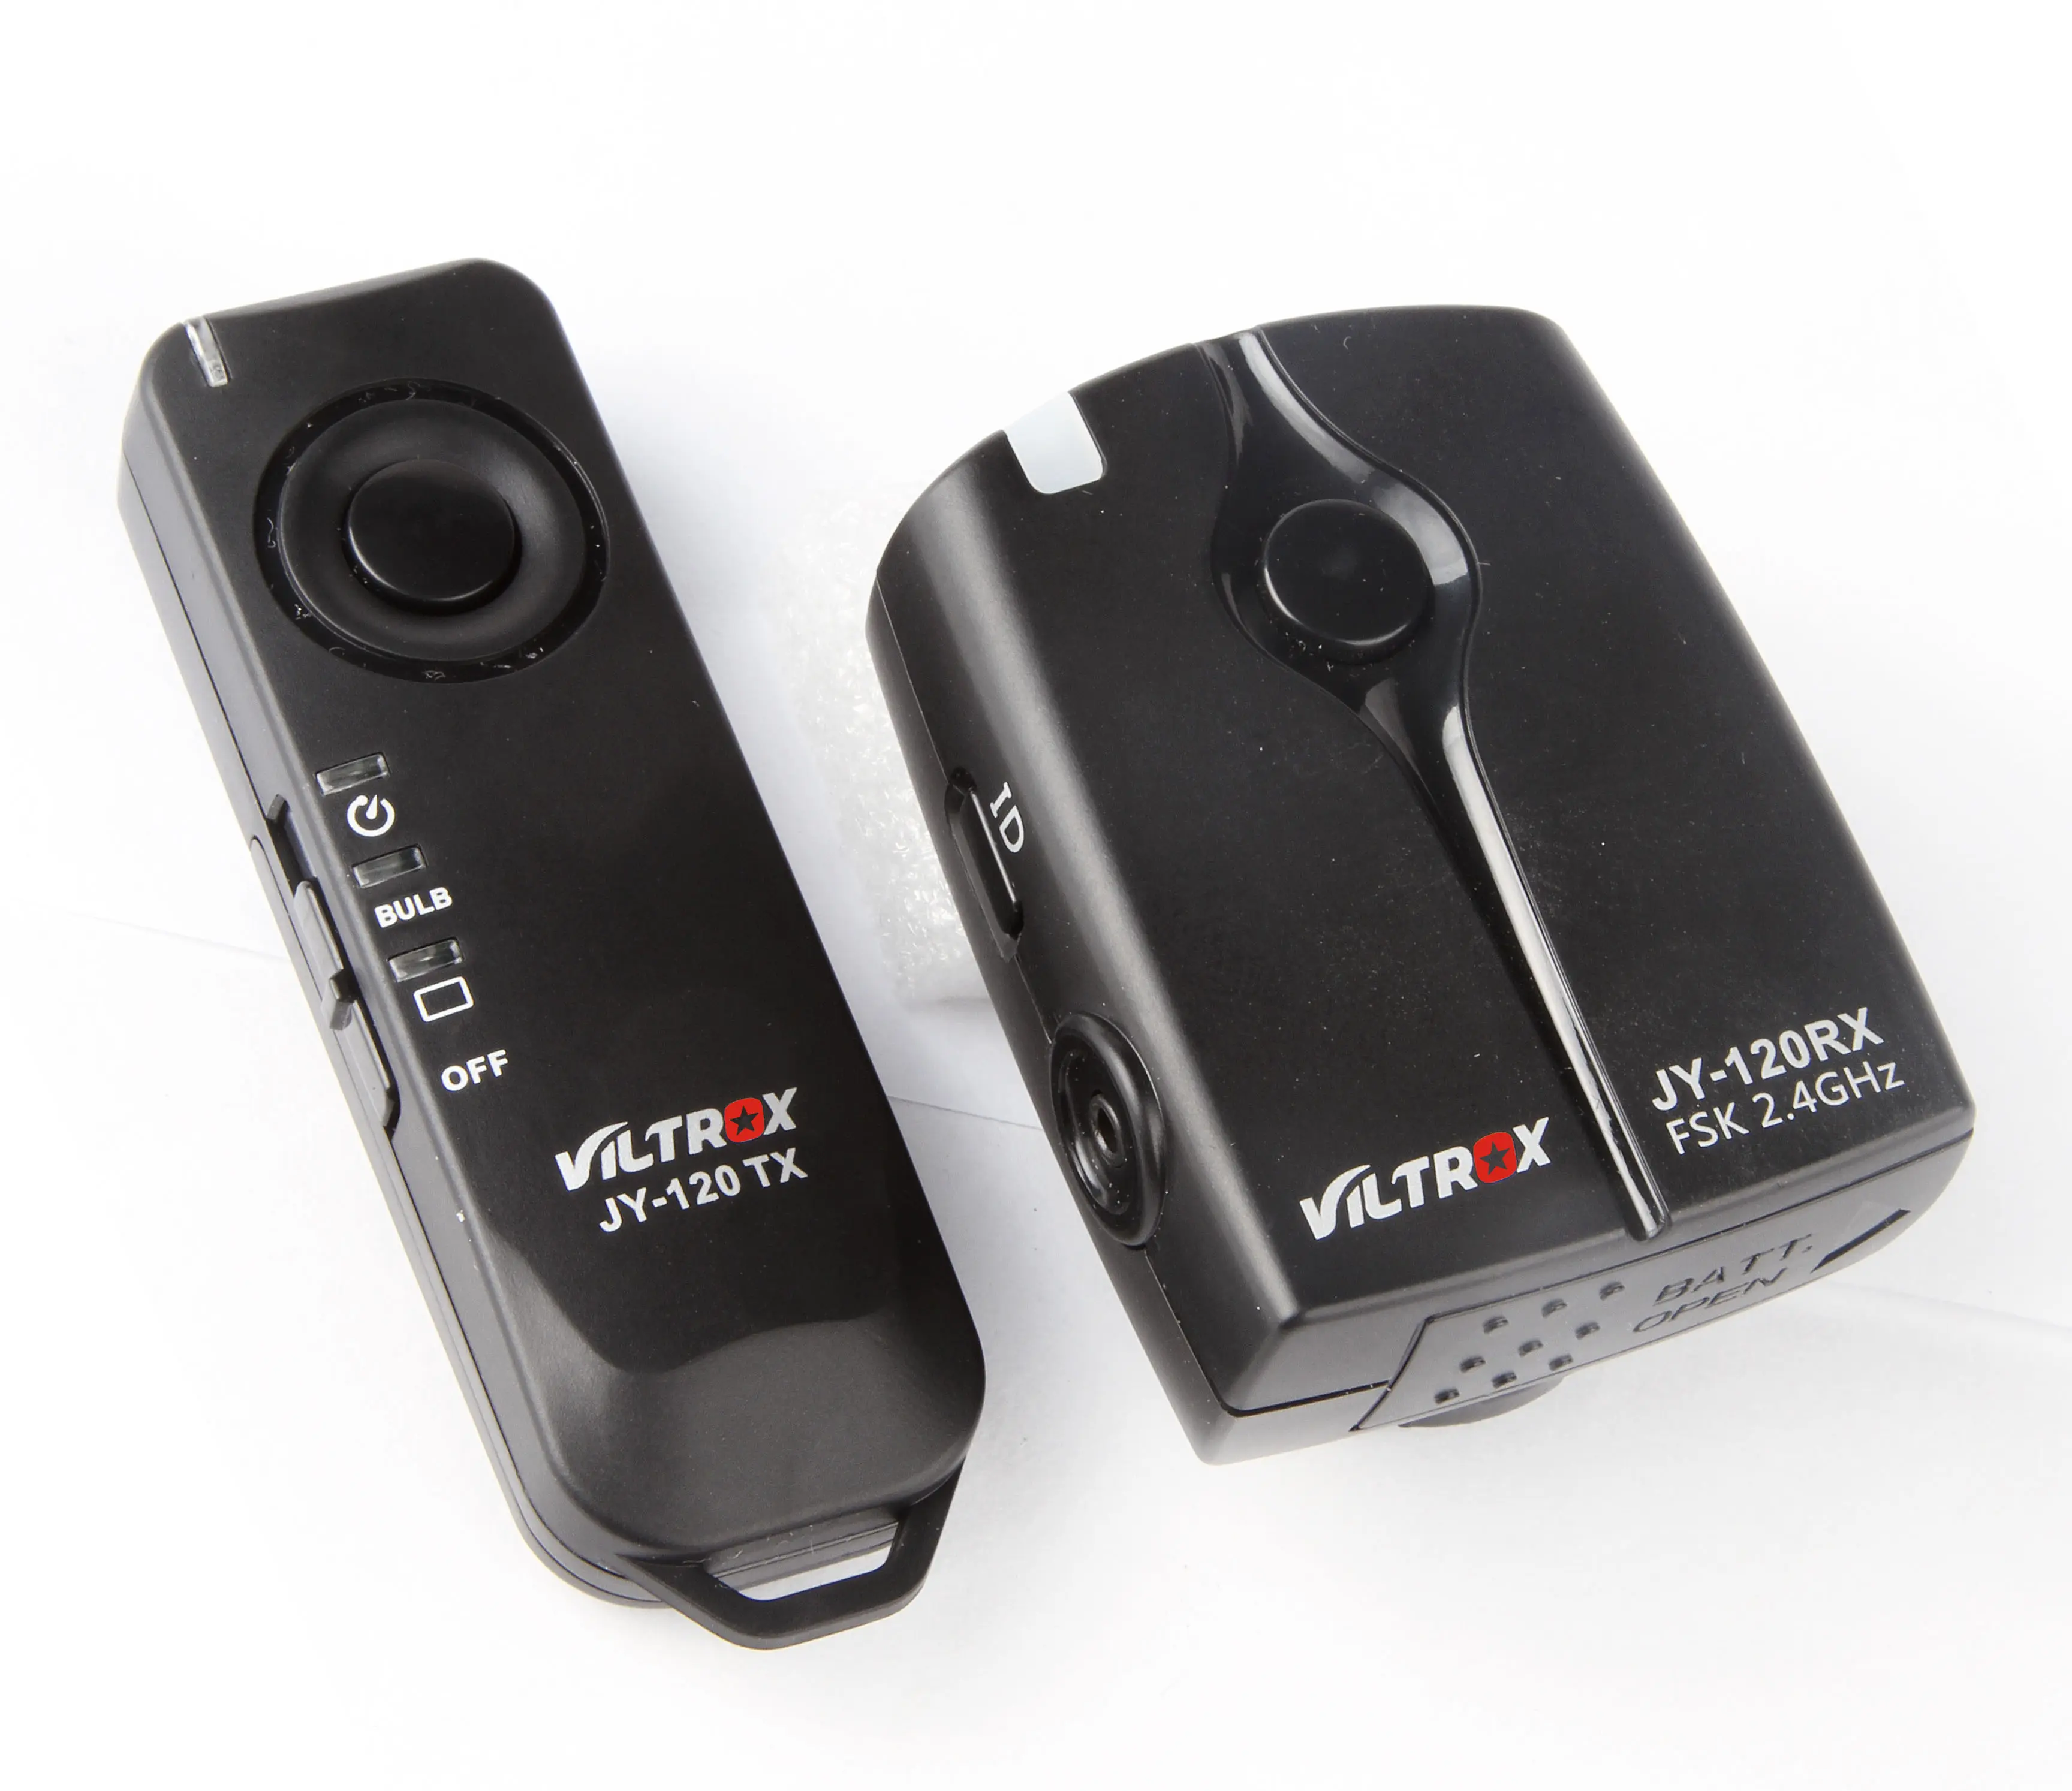 VILTROX JY-120-N1 беспроводной пульт дистанционного управления для затвора для камеры Nikon: D1,D2,D3,D4 серии, D200,D300,D300s,D700,D800,D800E